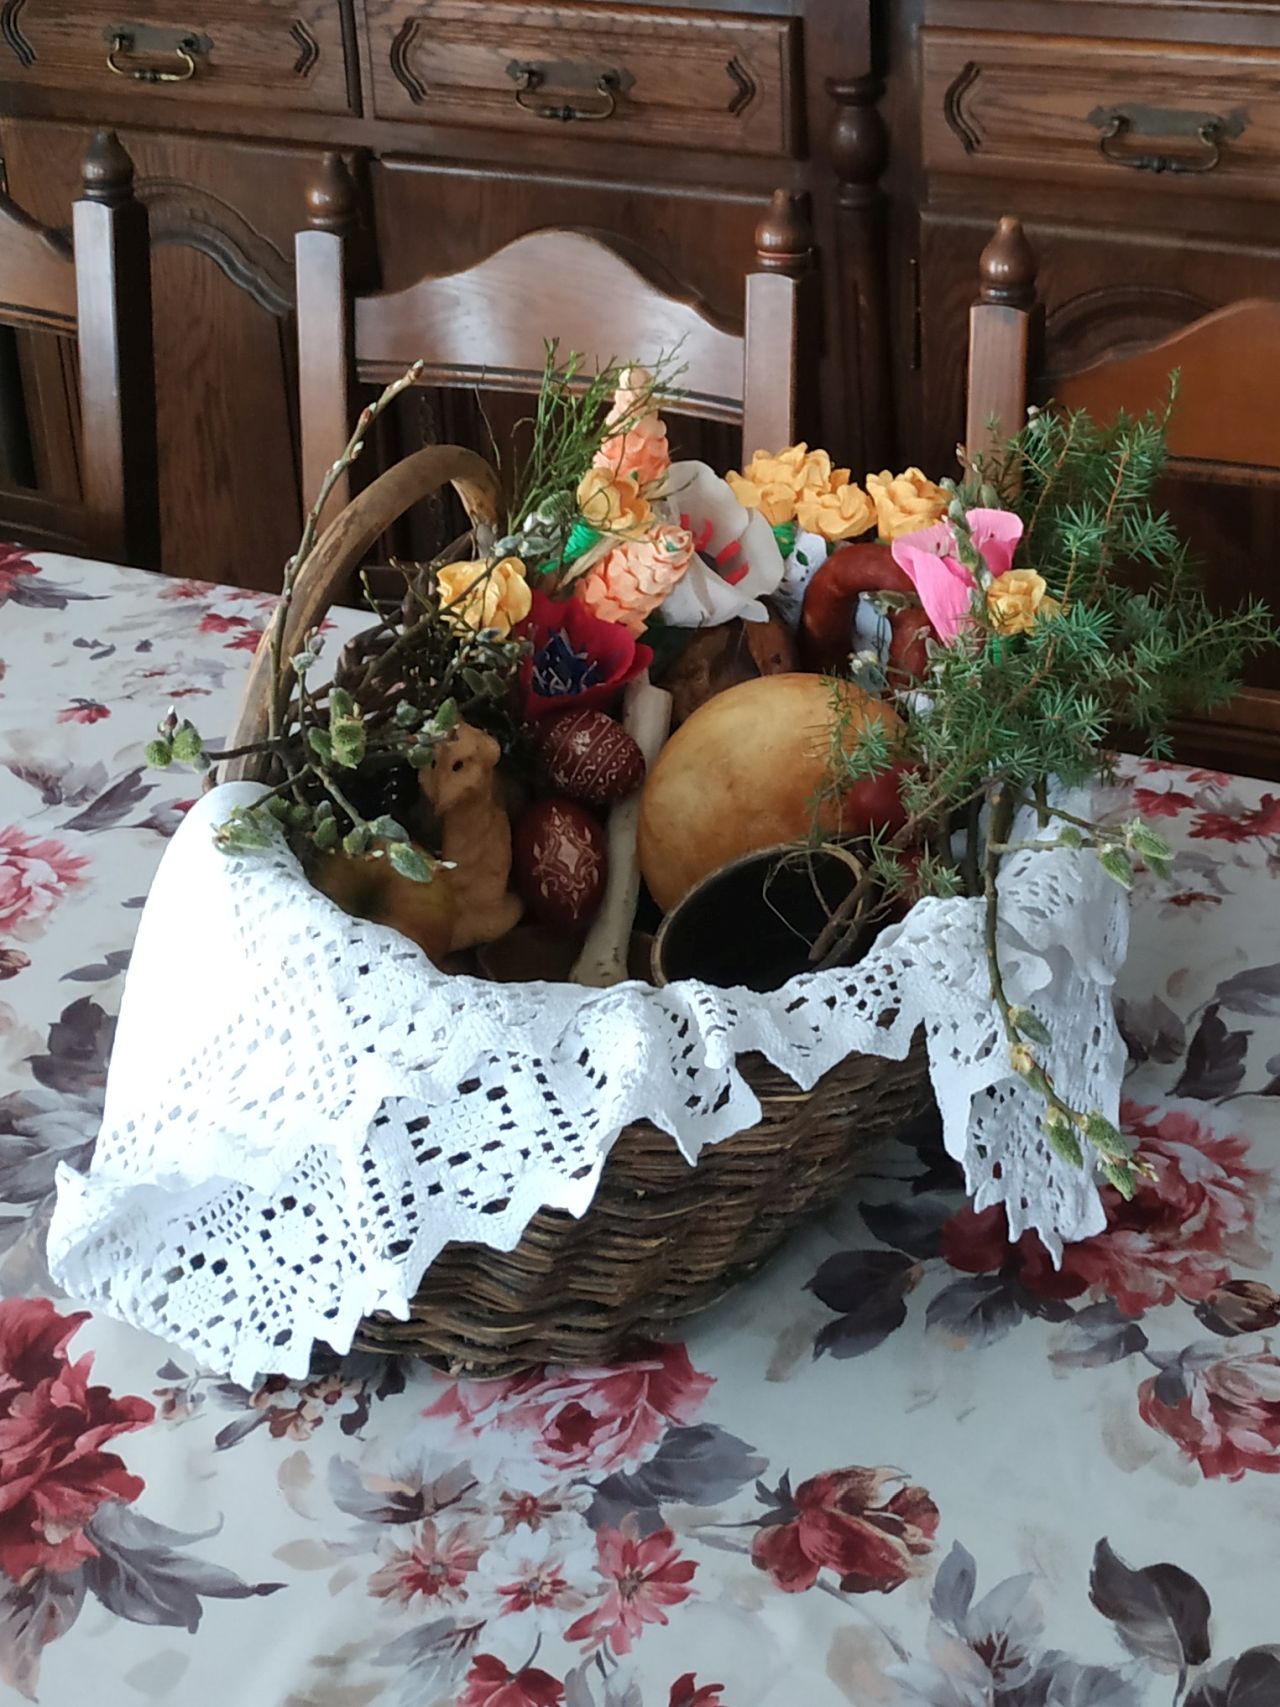 wiklinowy koszyk z białą, haklowaną serwetą, w środku baranek, chleb, pisanki ii inne wiktuały przystrojone w zielone gałązki oraz kolorowe kwiaty z bibuły